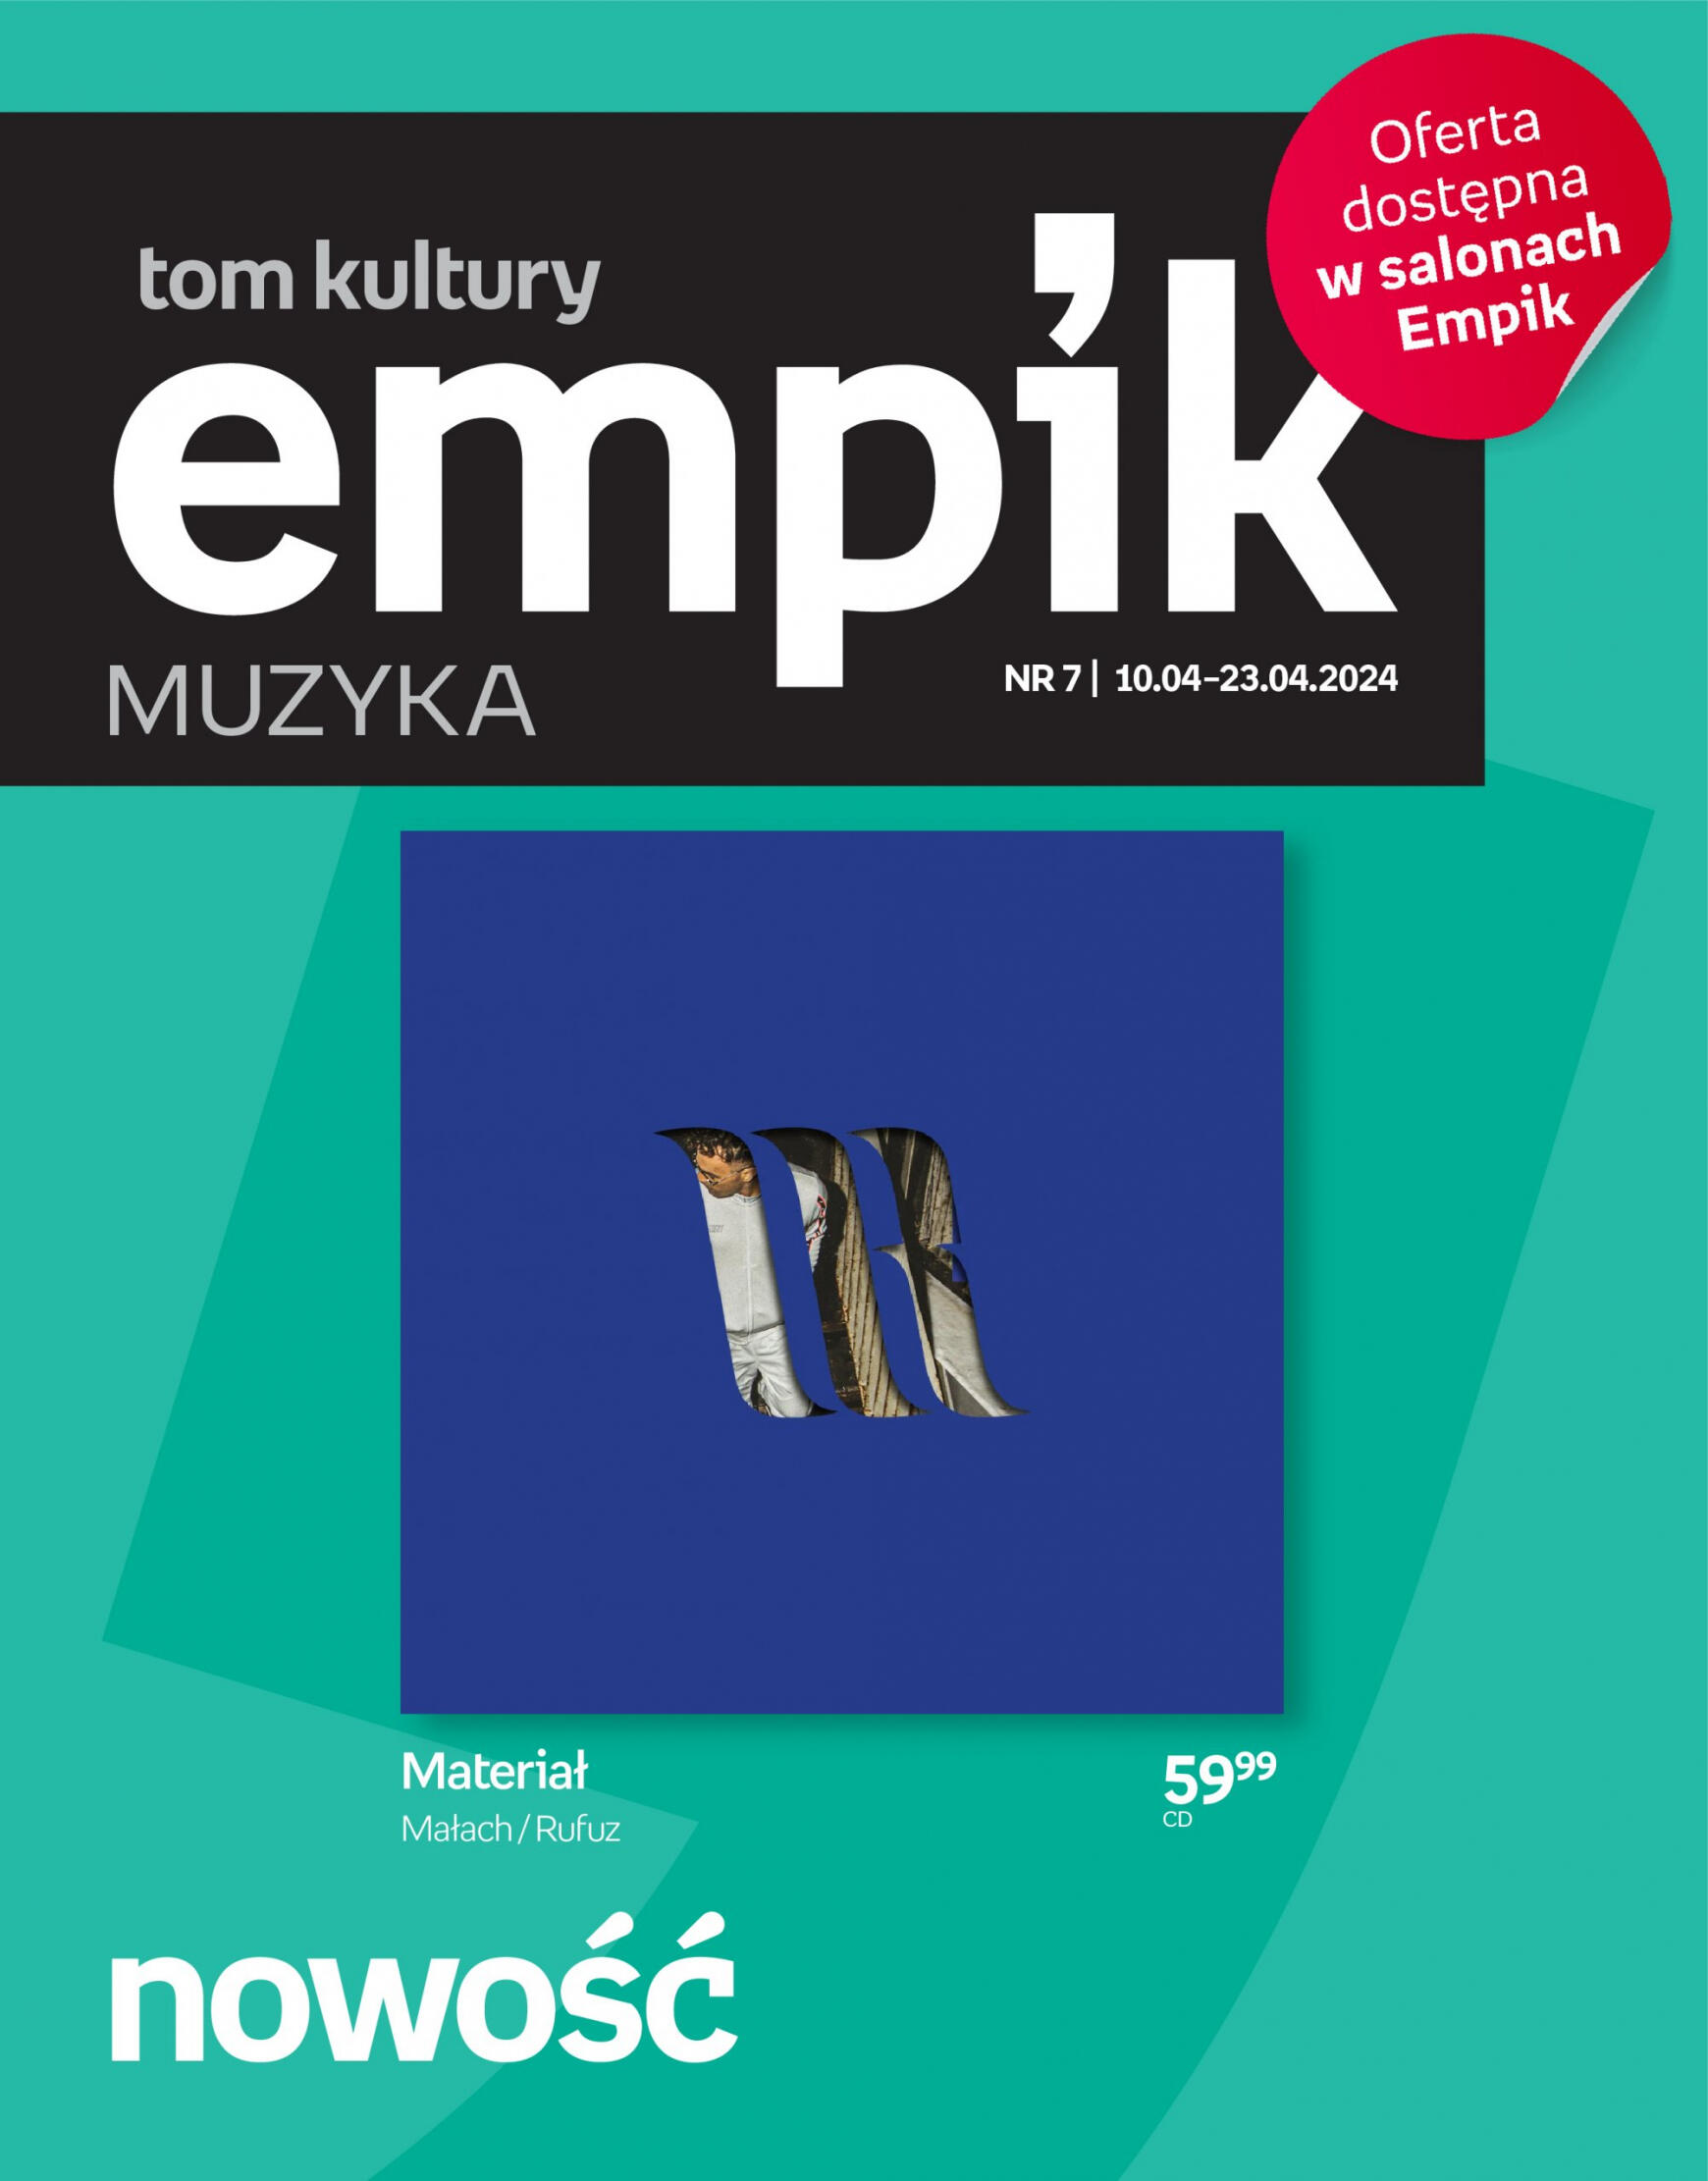 empik - Empik - Tom kultury muzyka gazetka aktualna ważna od 10.04. - 23.04. - page: 1